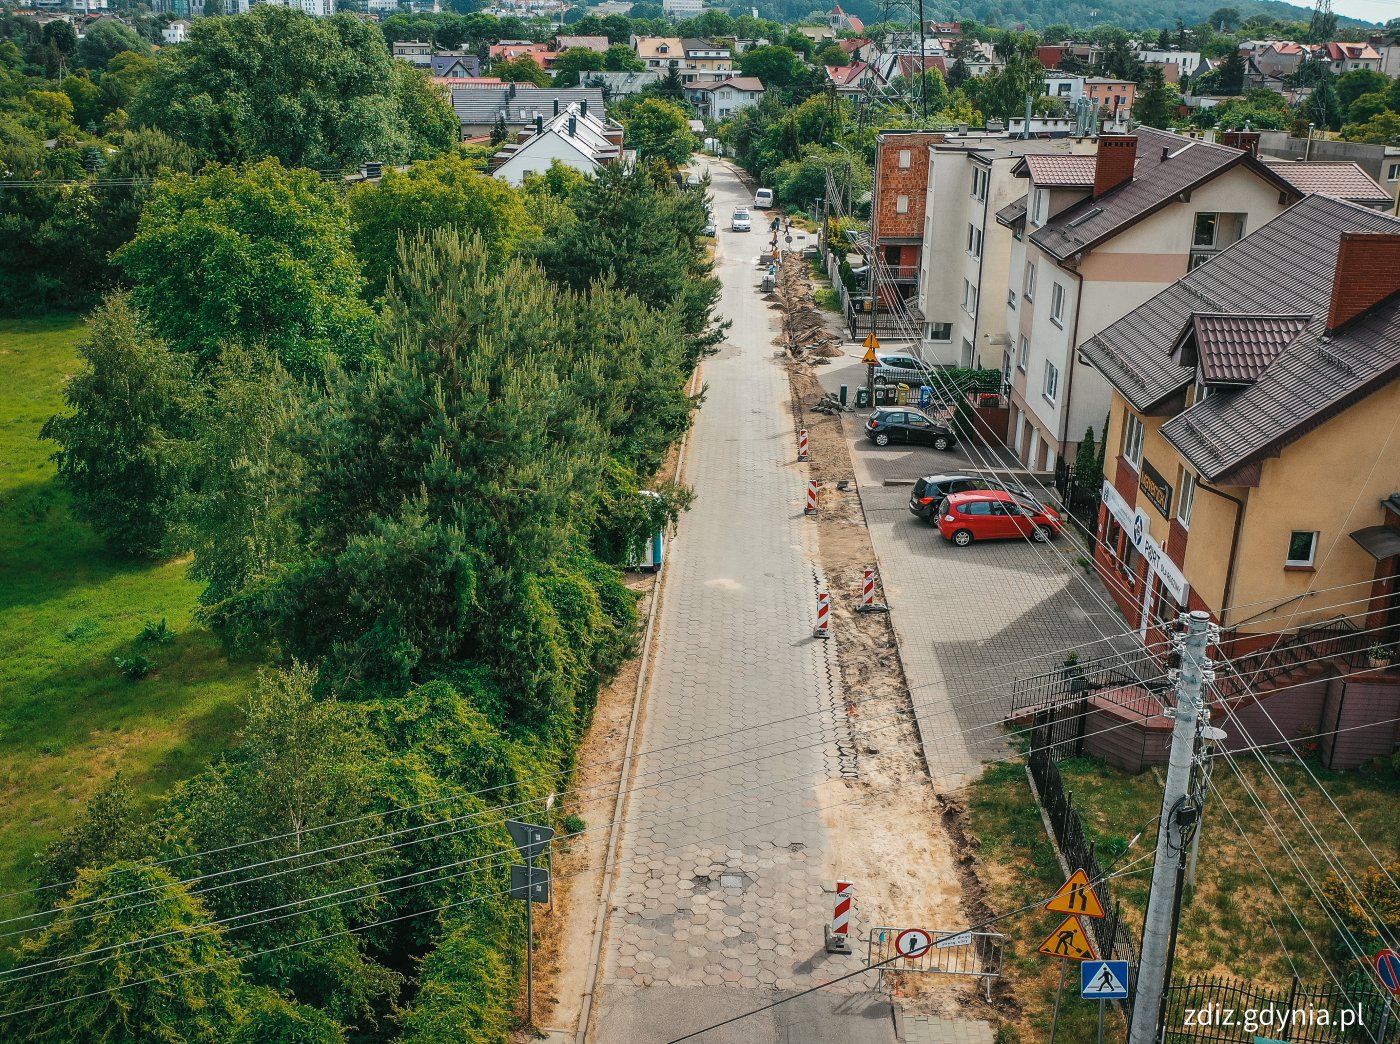 widok z góry na drogę, trwający remont chodnika, widoczna jezdnia, zieleń oraz budynki